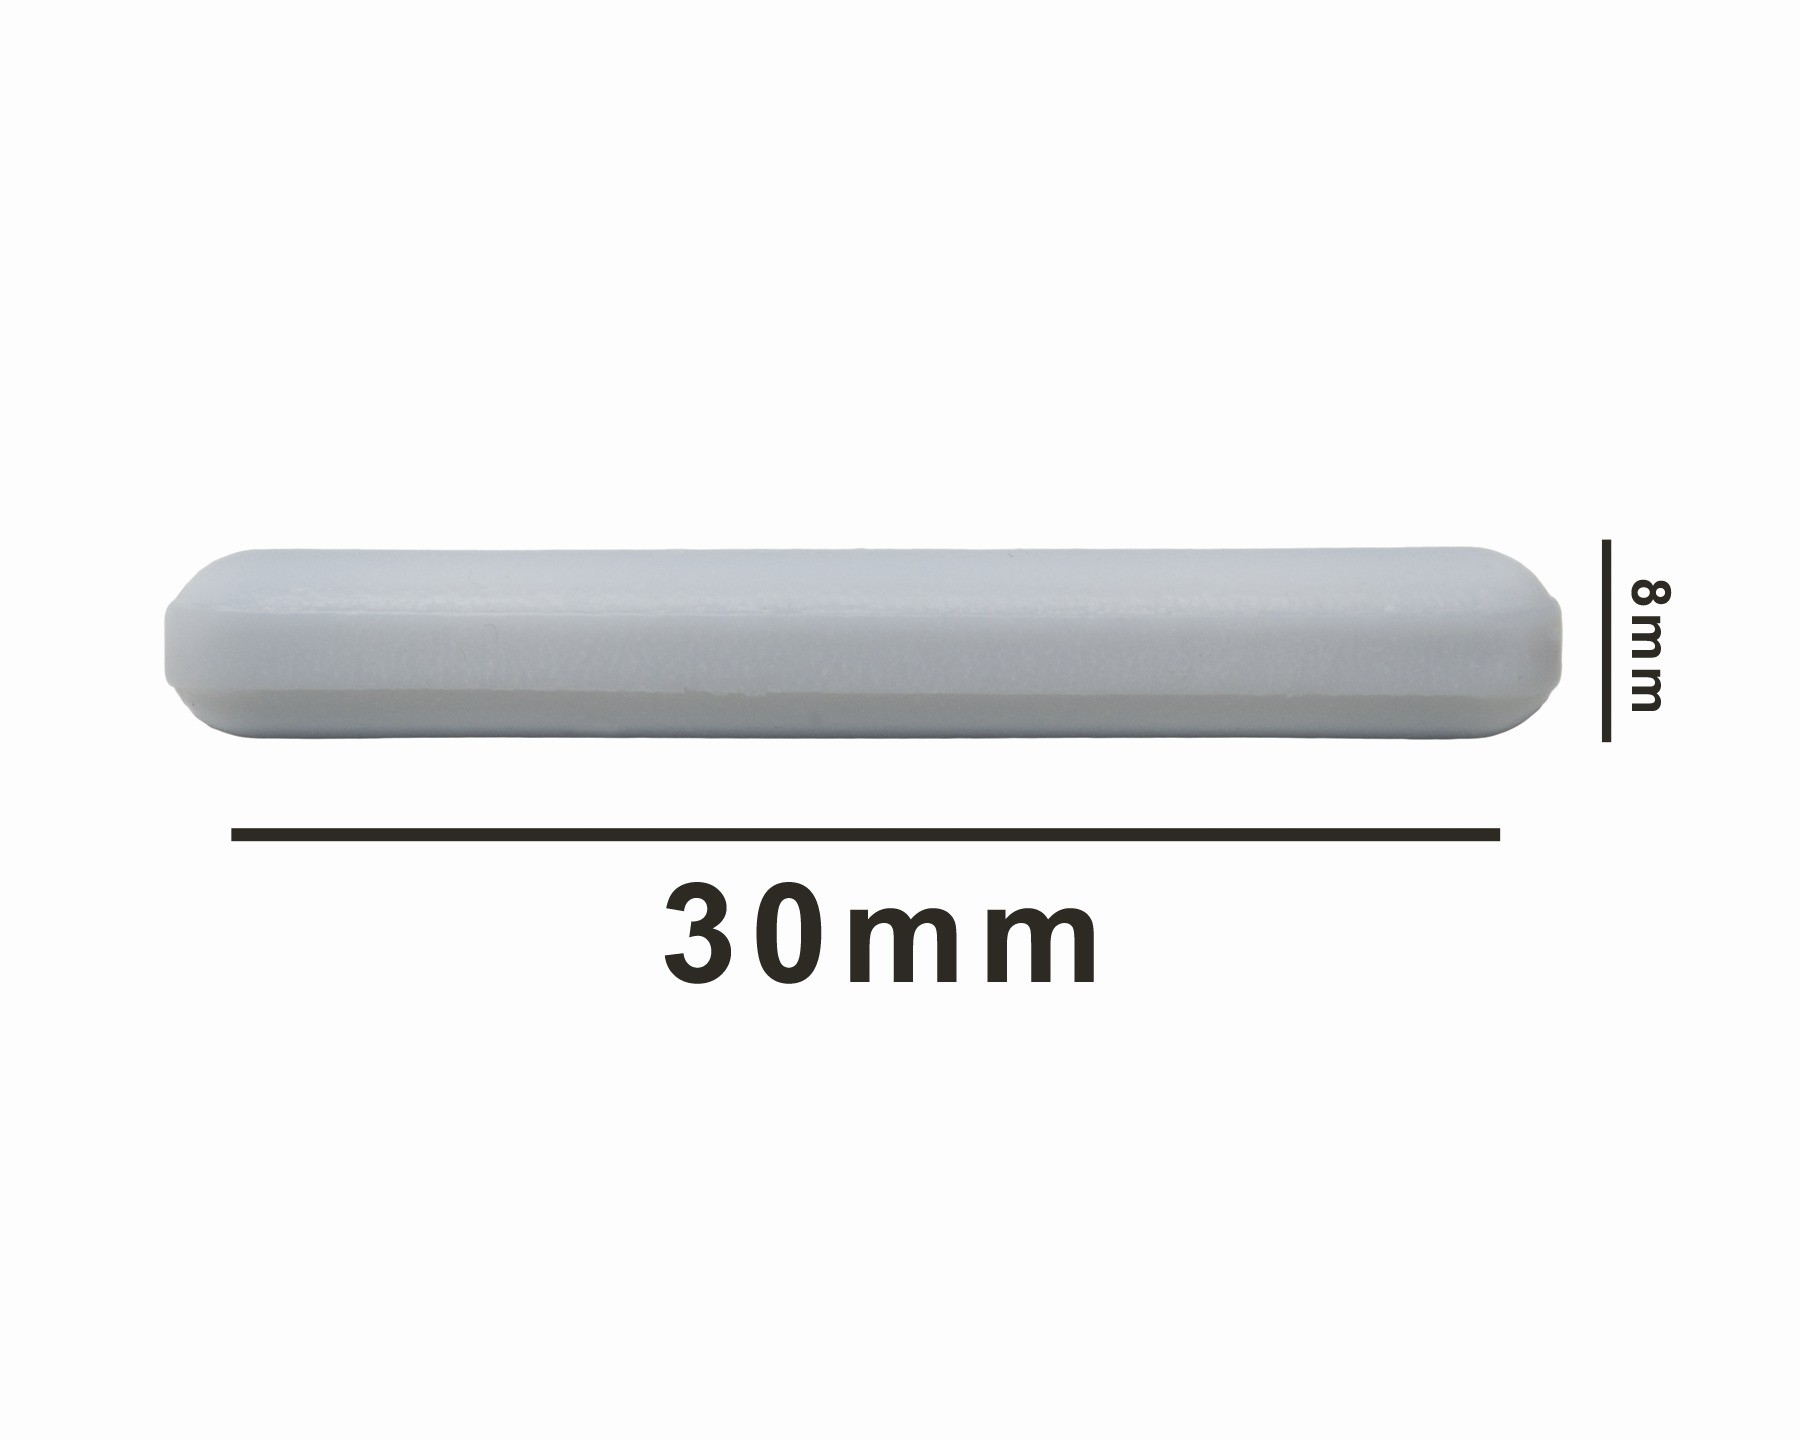 SP Bel-Art Spinbar Teflon Polygon Magnetic Stirring Bar; 30 x 8mm, White, without Pivot Ring